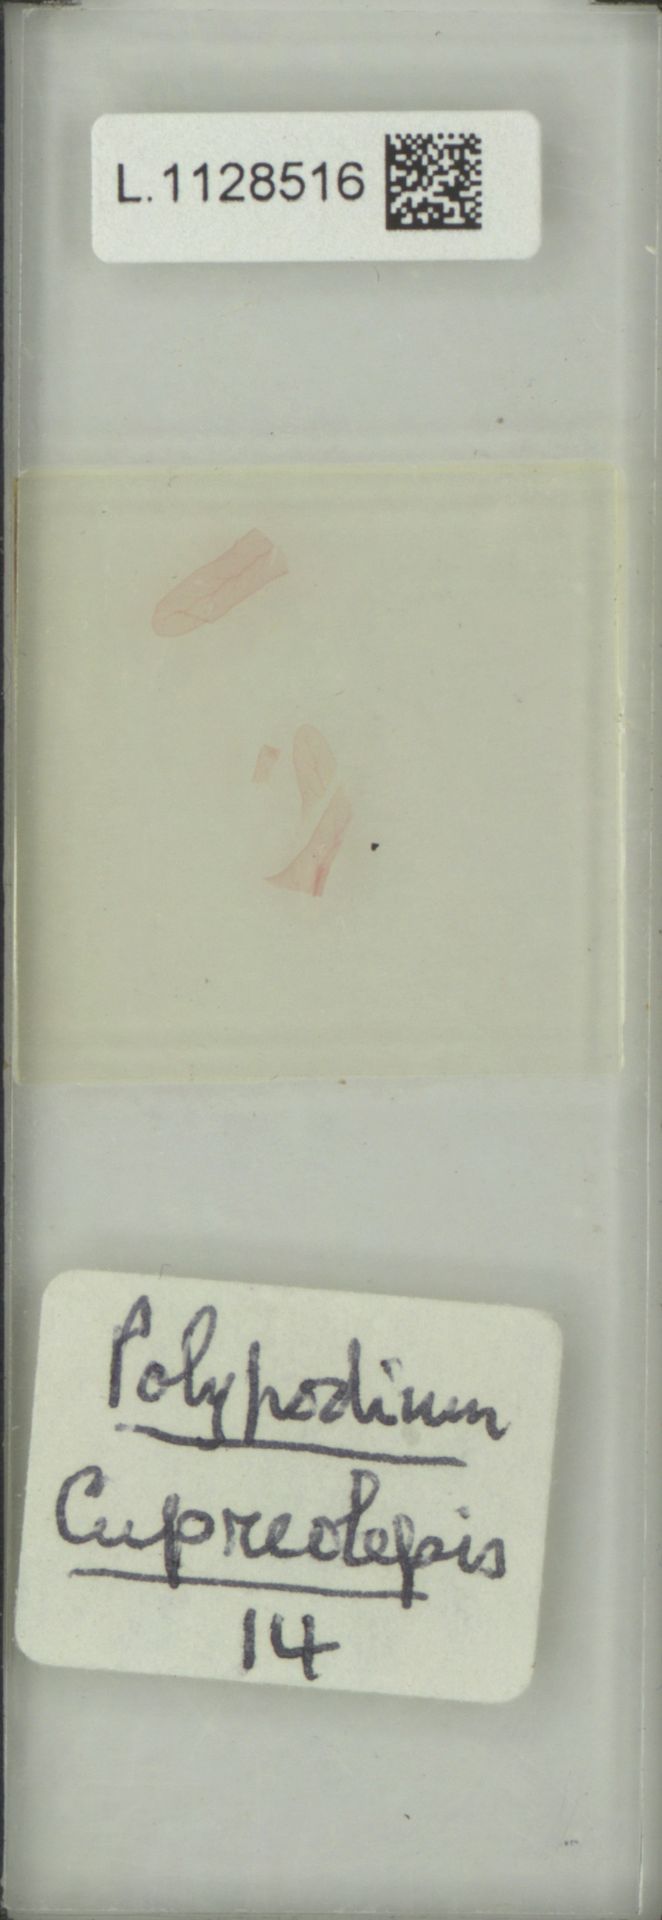 Pecluma alfredii var. cupreolepis image